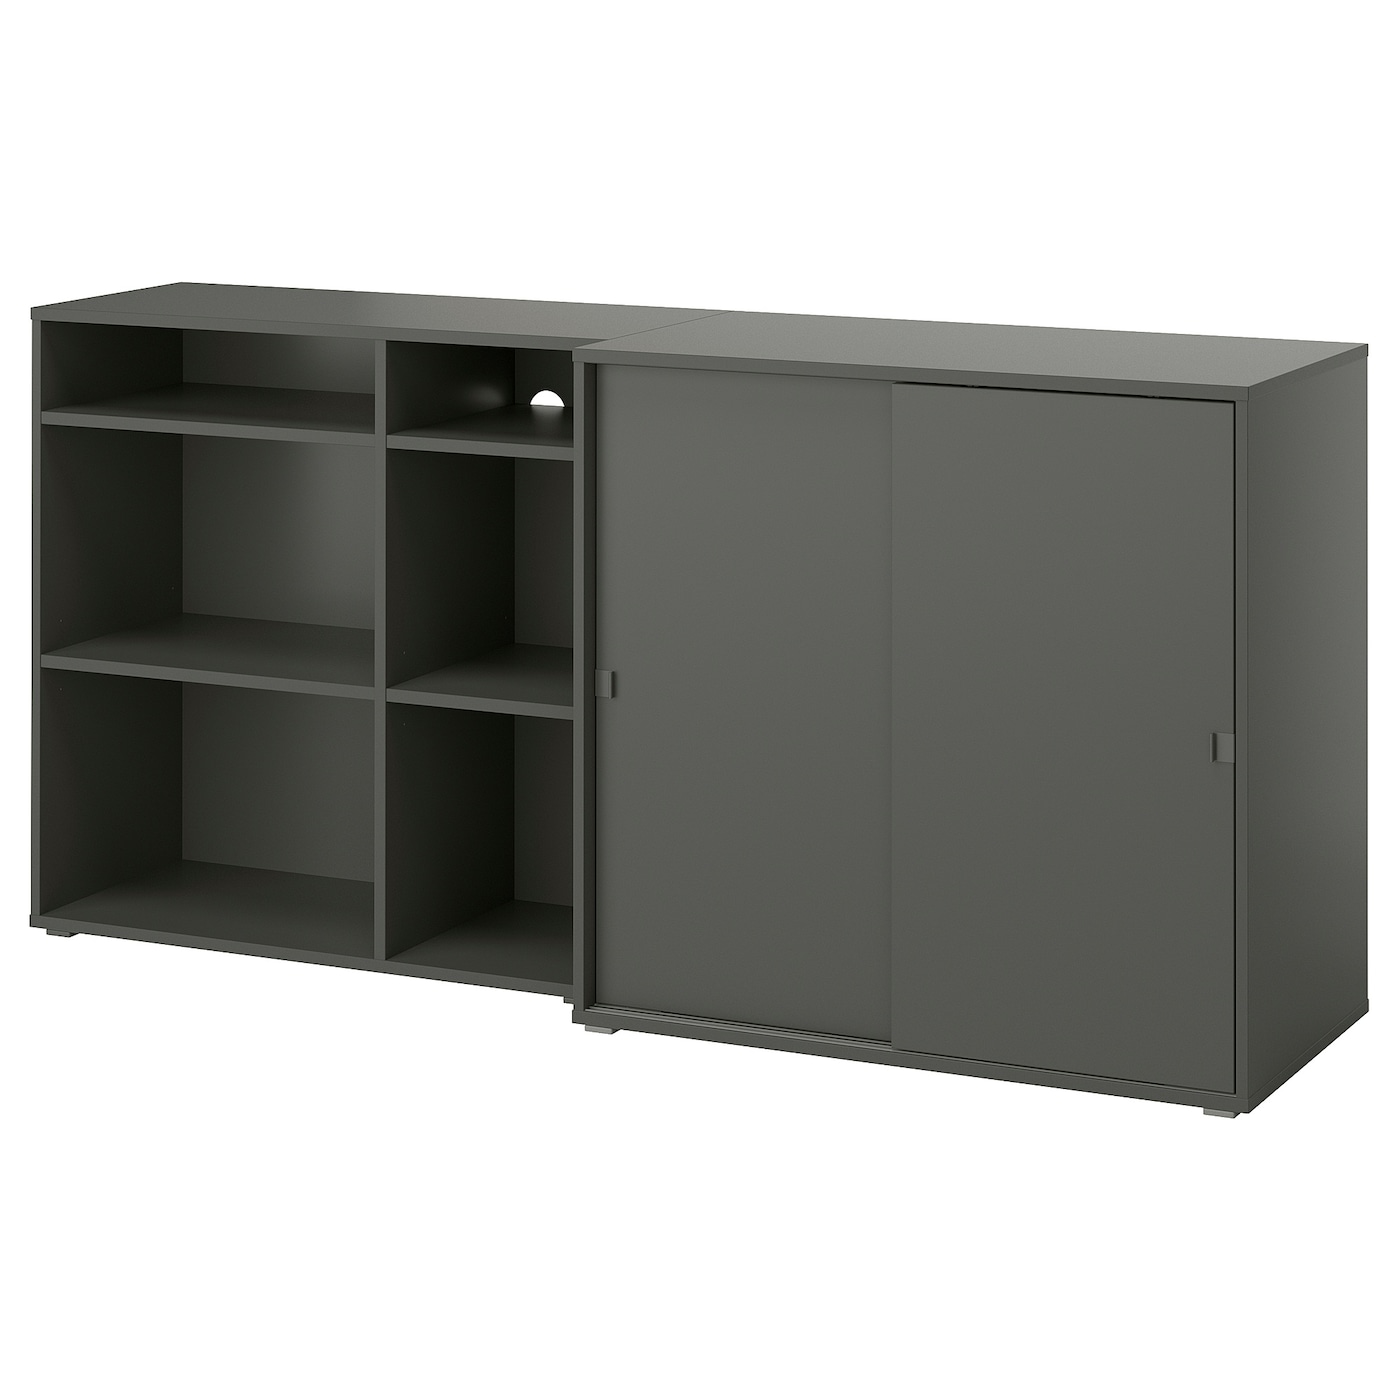 Книжный шкаф - VIHALS IKEA/ ВИХАЛС ИКЕА,   190х90 см, черный